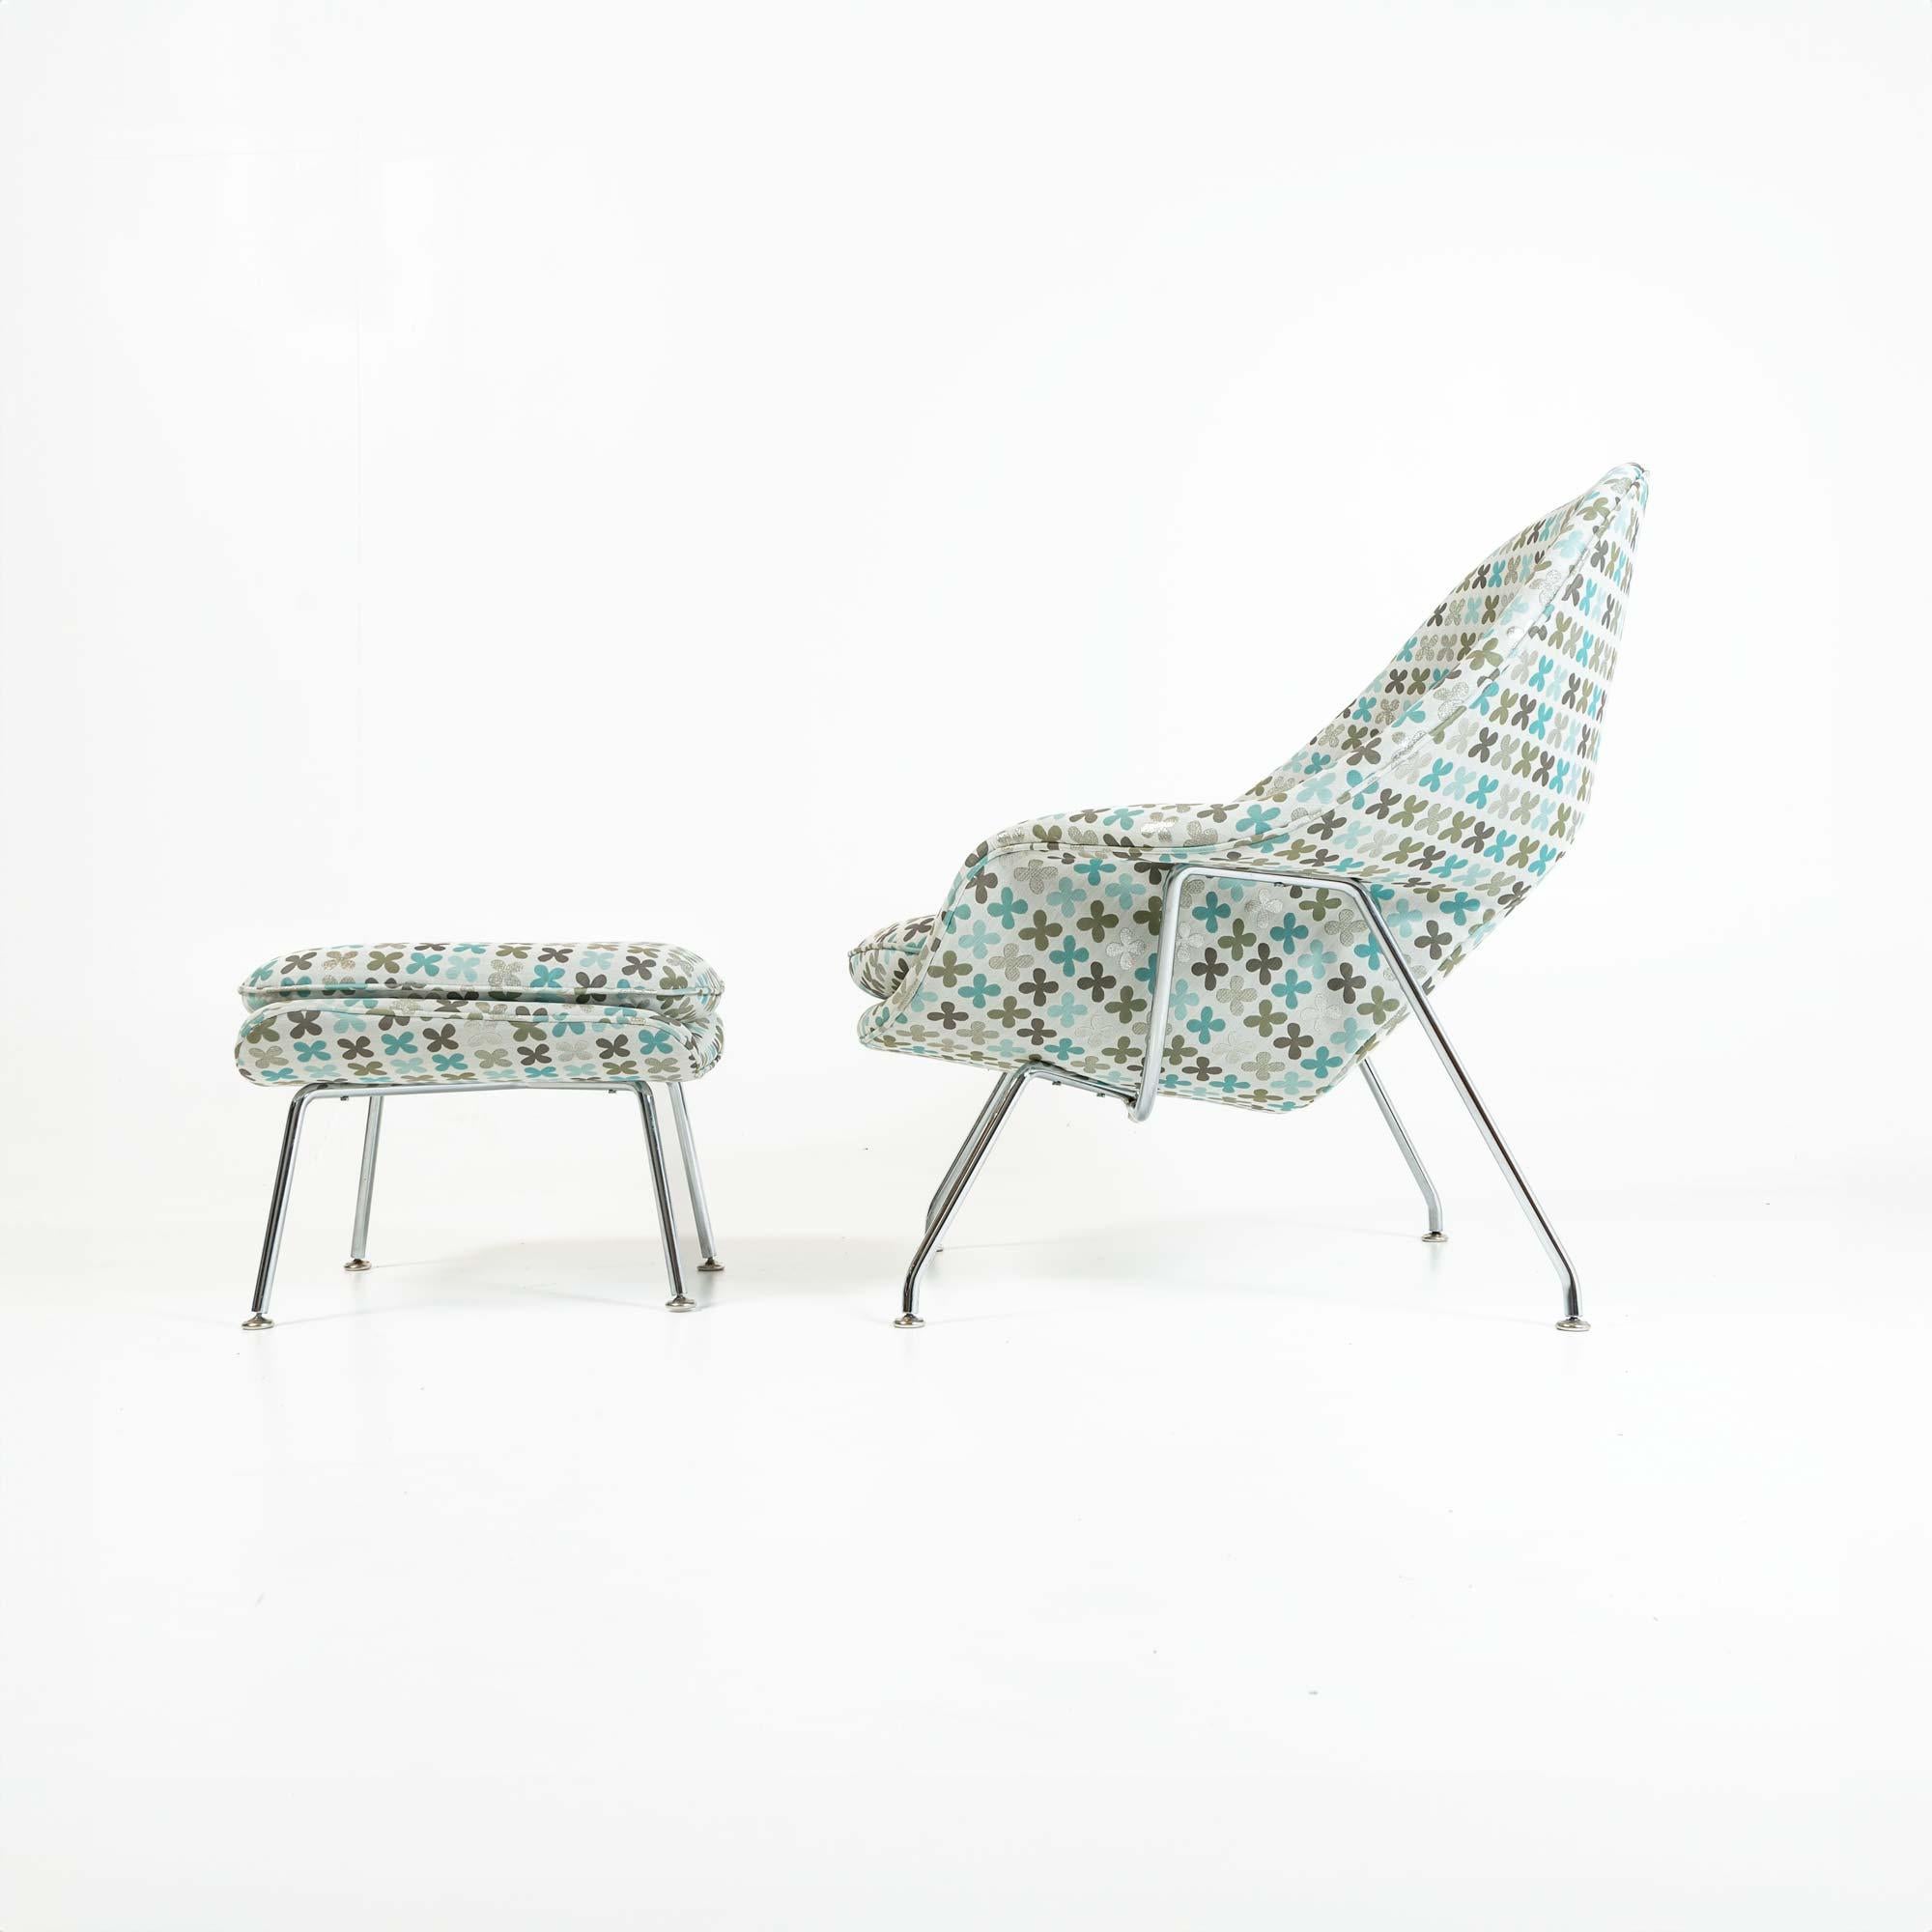 L'un des modèles de chaise les plus emblématiques du XXe siècle, Eero Saarinen a conçu cette chaise longue pour Florence Icone à la demande d'